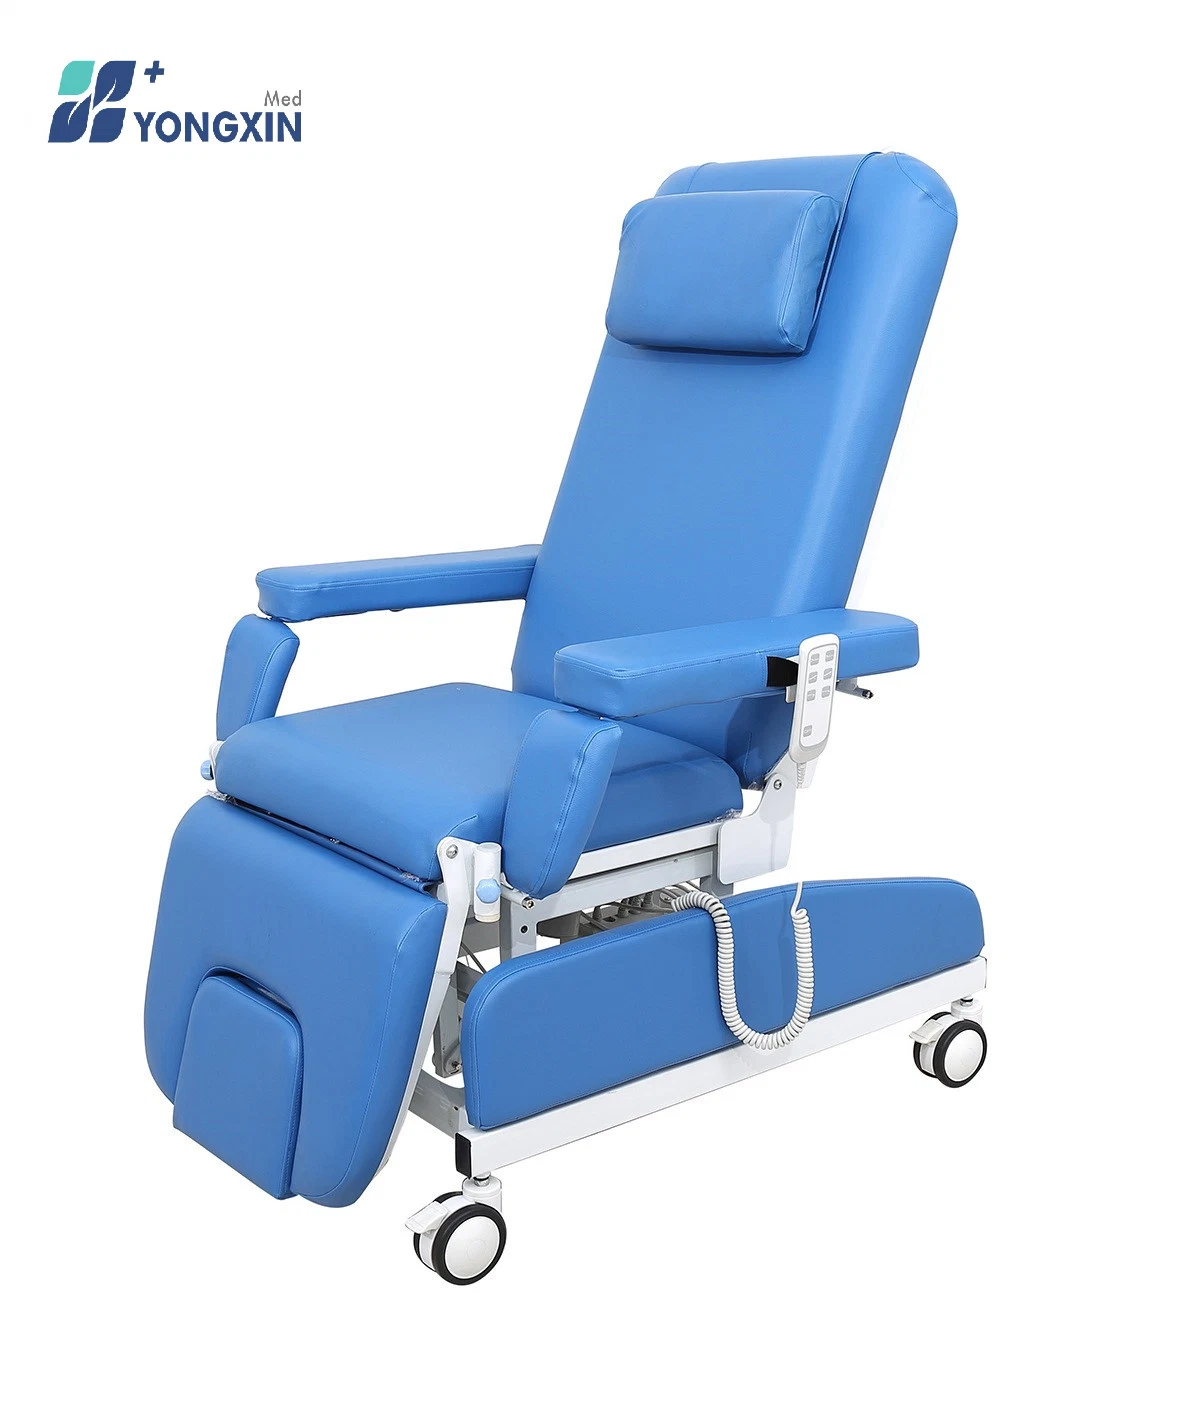 Yxz-0938 Chaise de don de sang électrique de luxe, Chaise utilisée dans la salle de dialyse de l'hôpital, Chaise d'infusion électrique et manuelle.